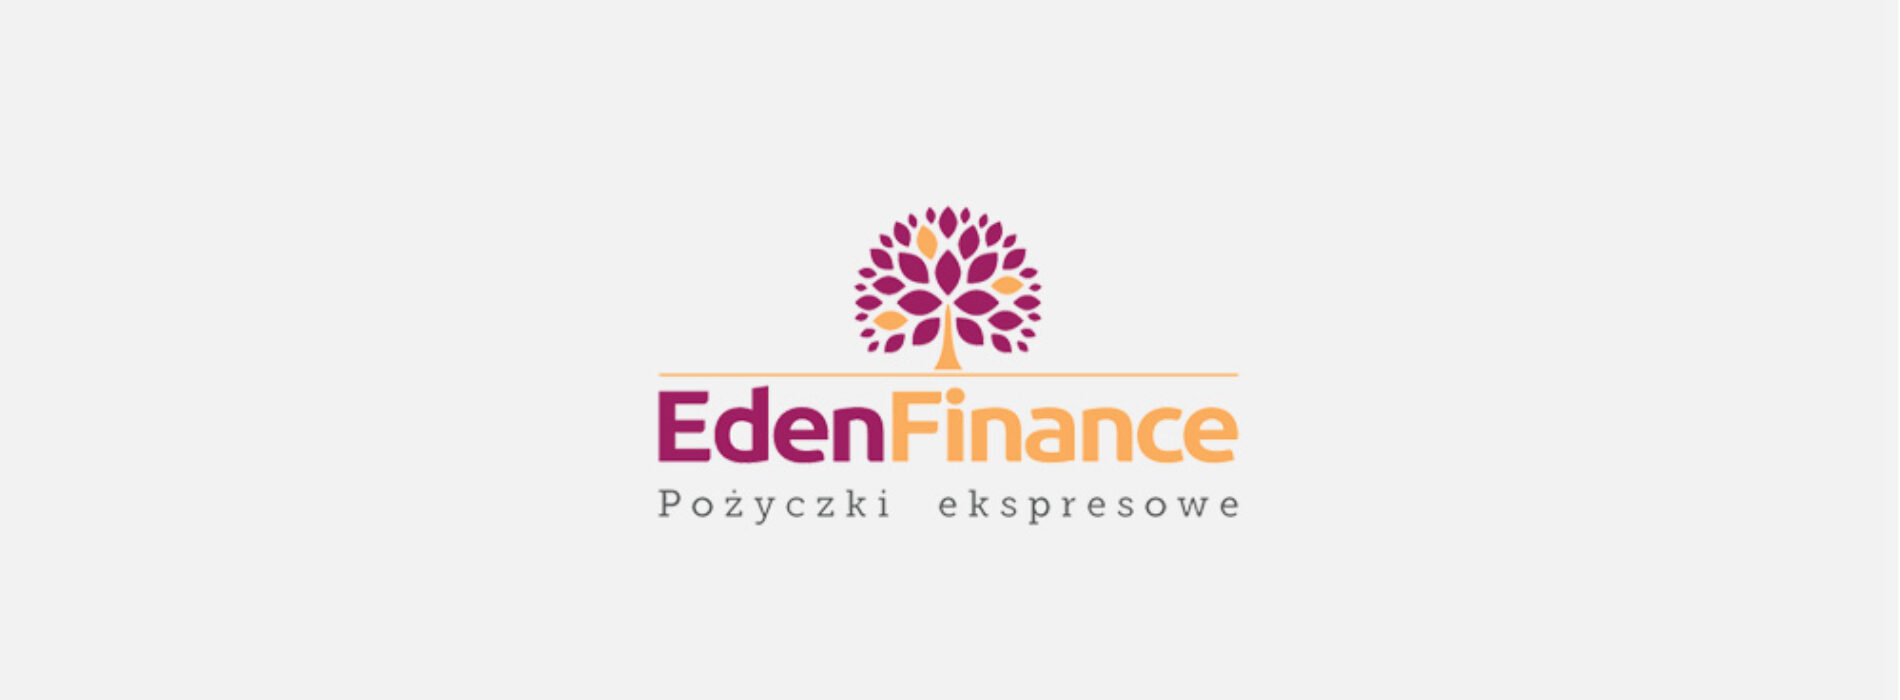 Eden Finance – sprawdziliśmy ofertę i opinie klientów